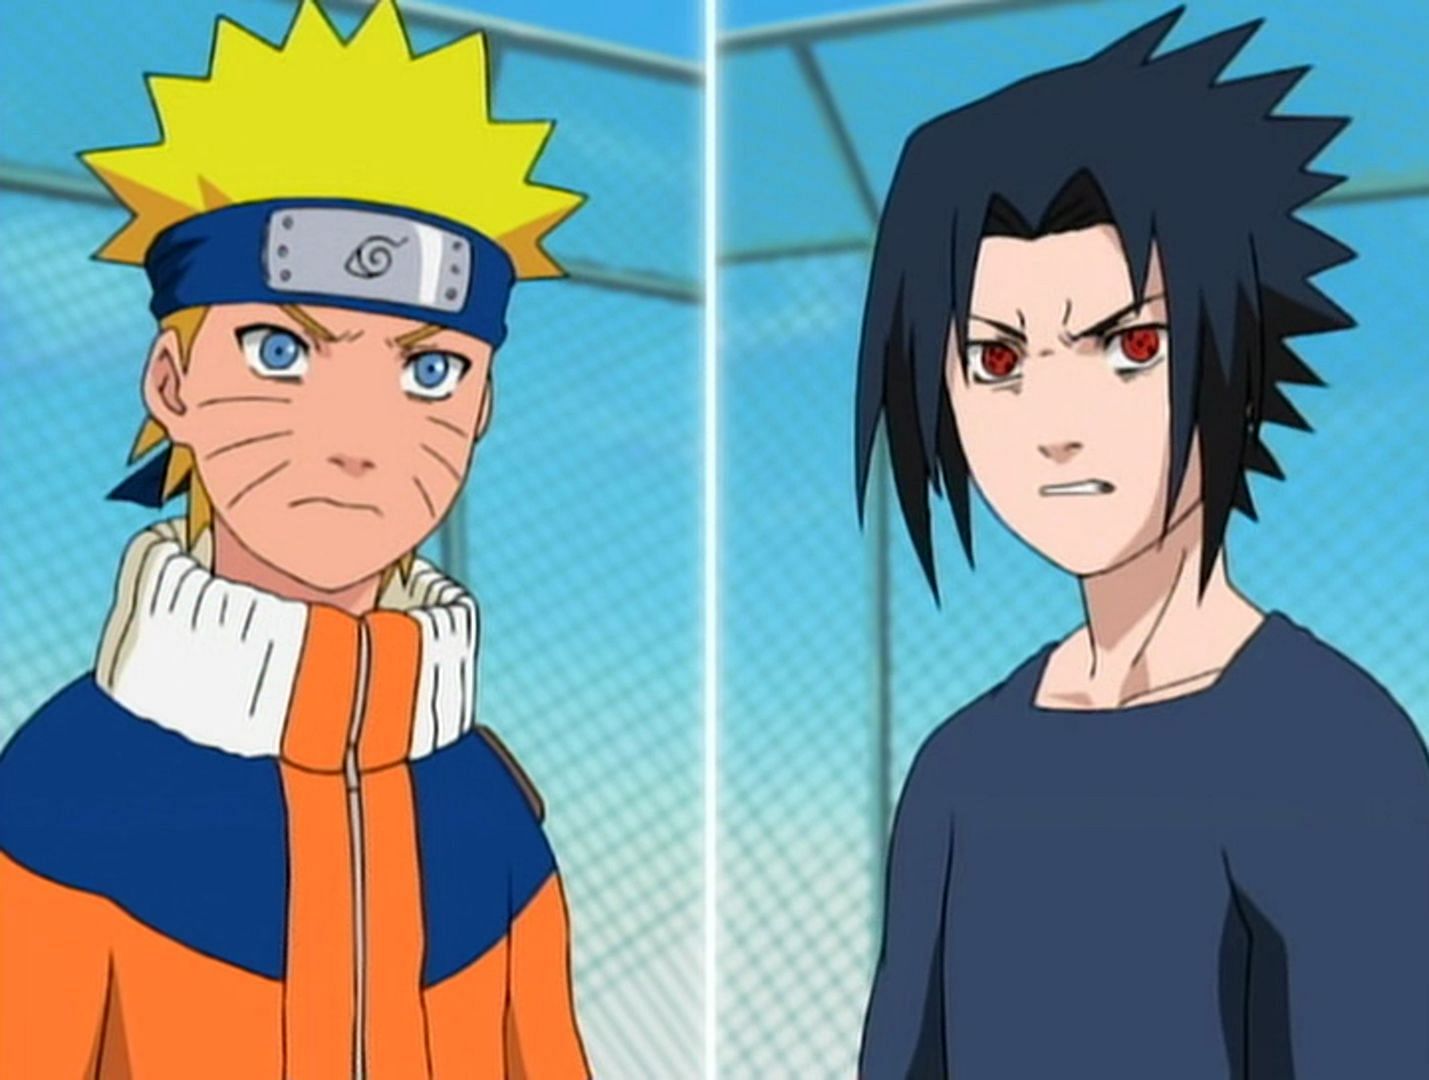 Naruto Uzumaki and Sasuke Uchiha (Image via Narutopedia.com)